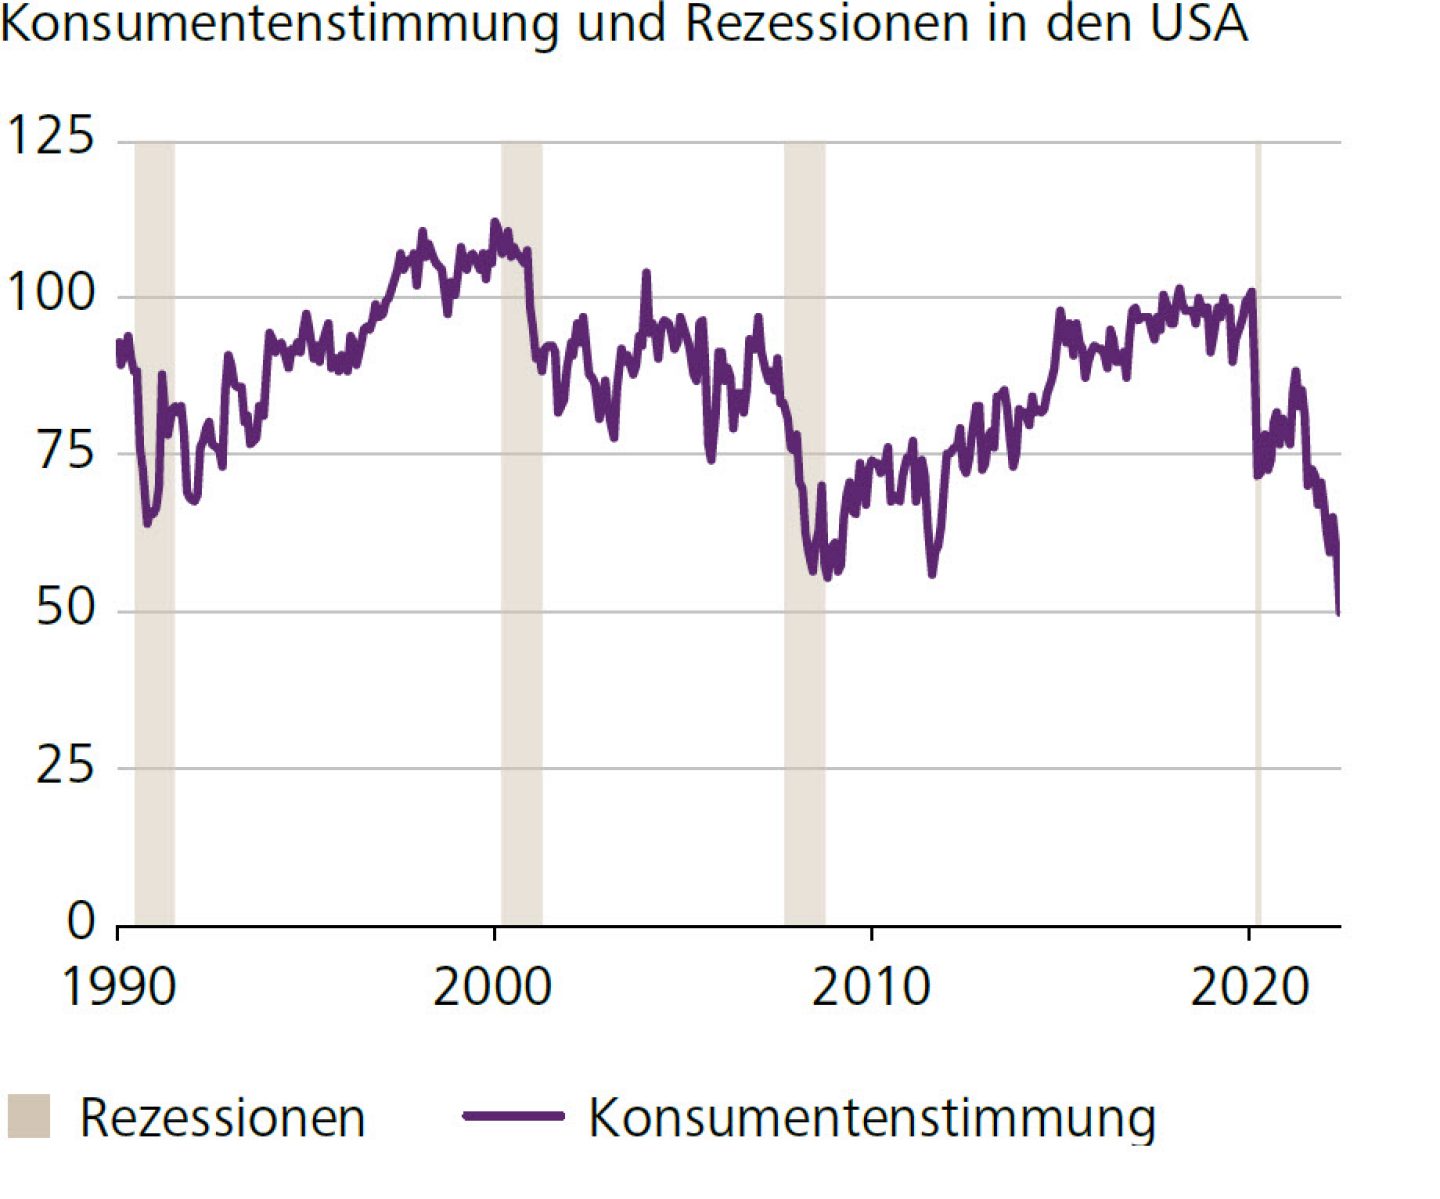 Konsumentenstimmung und Rezessionen in den USA